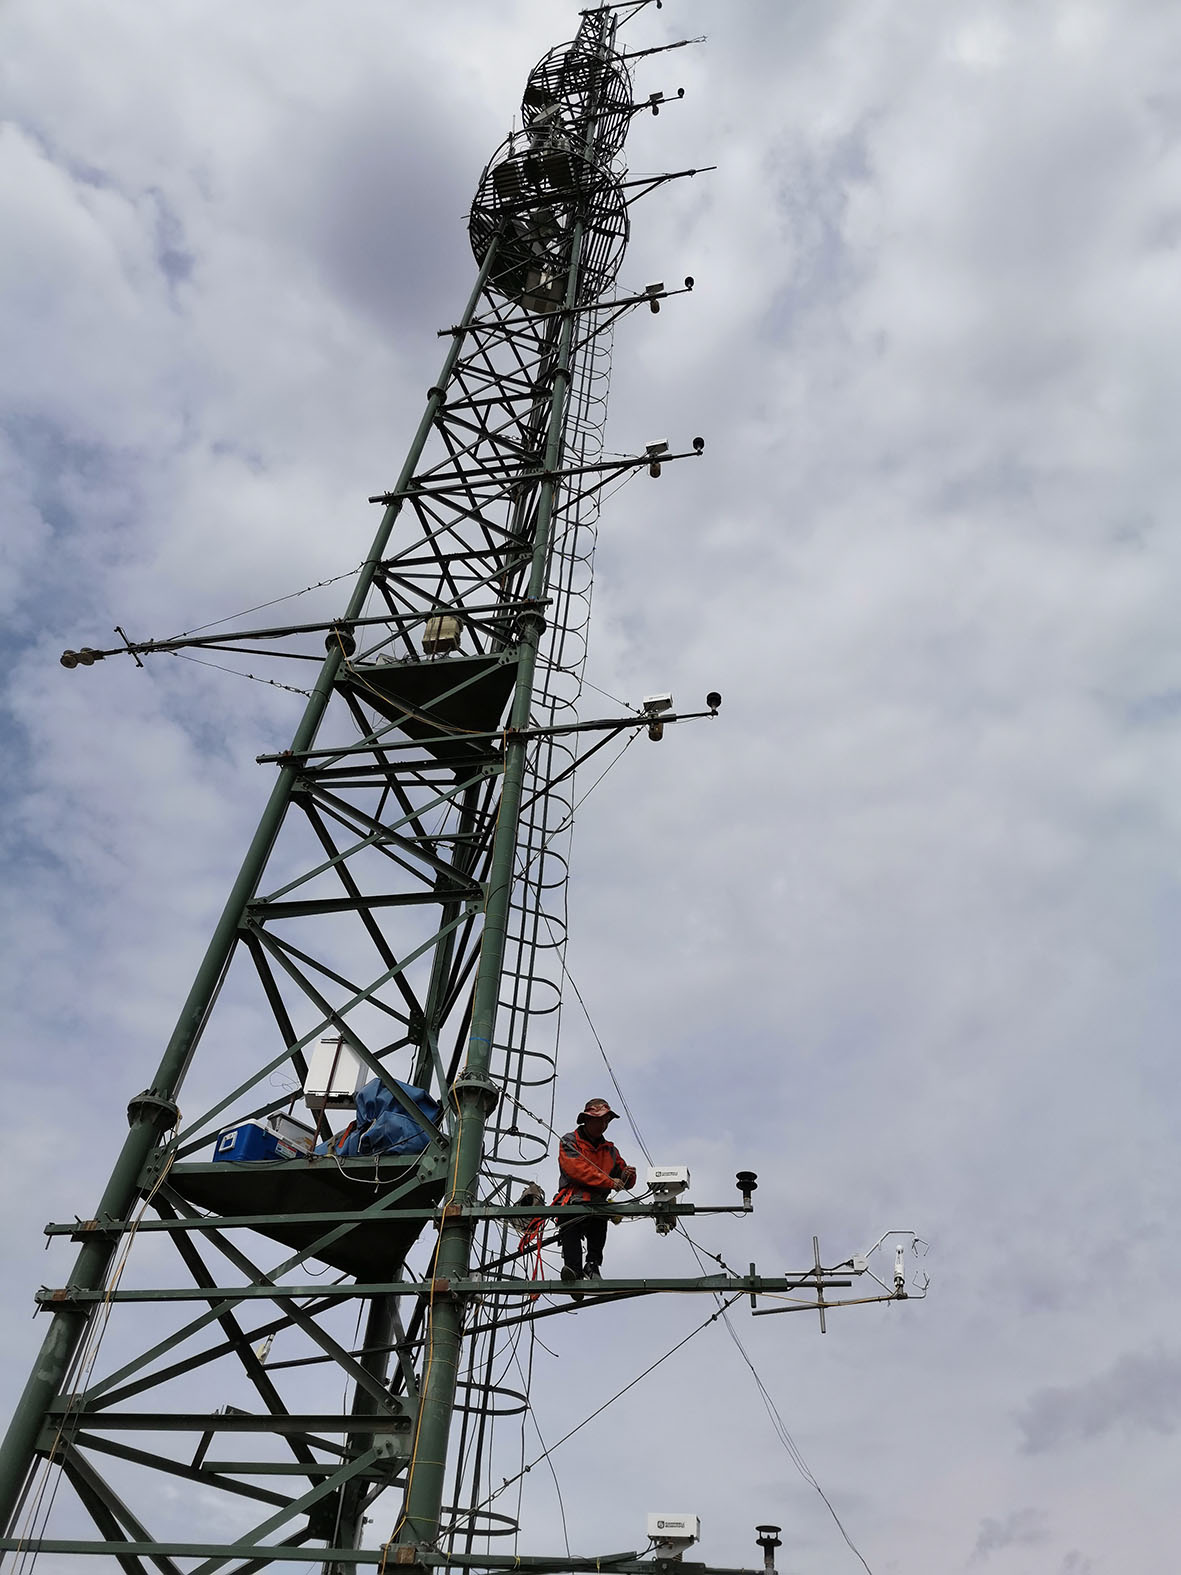 张掖黑河遥感站 AP200大气廓线测量系统